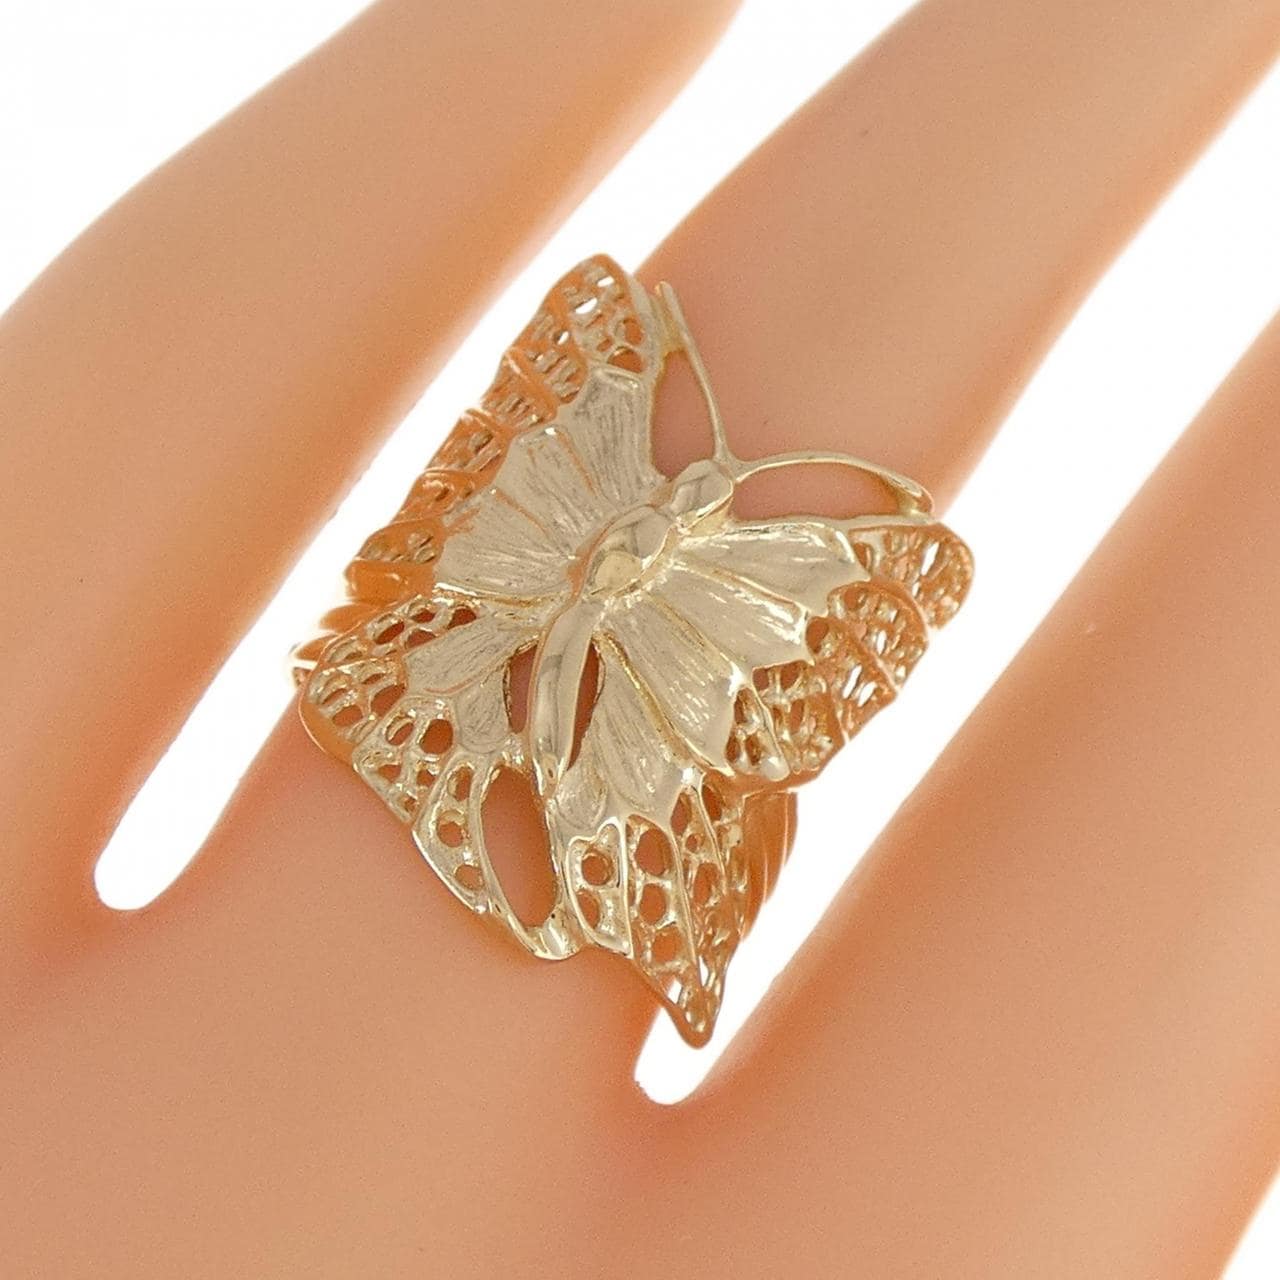 K18YG butterfly ring